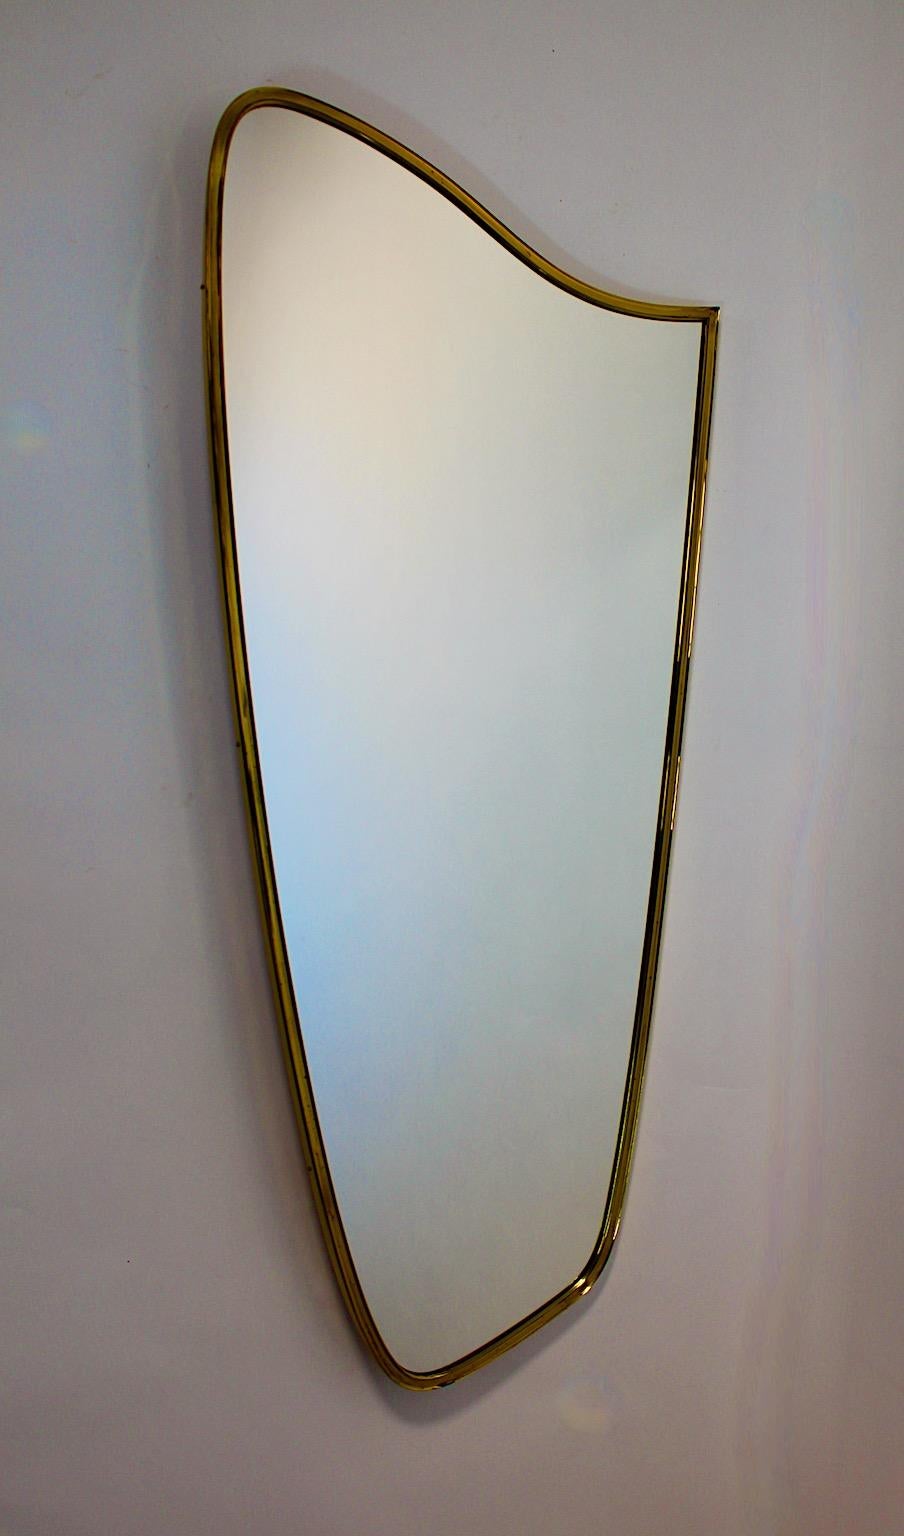 Miroir de sol ou miroir pleine longueur vintage Mid Century Modern en laiton et miroir des années 1950 en Italie.
Un superbe miroir de sol de belle forme et de grande taille, qui permet de l'accrocher dans une entrée ou autour d'une cheminée. Ce